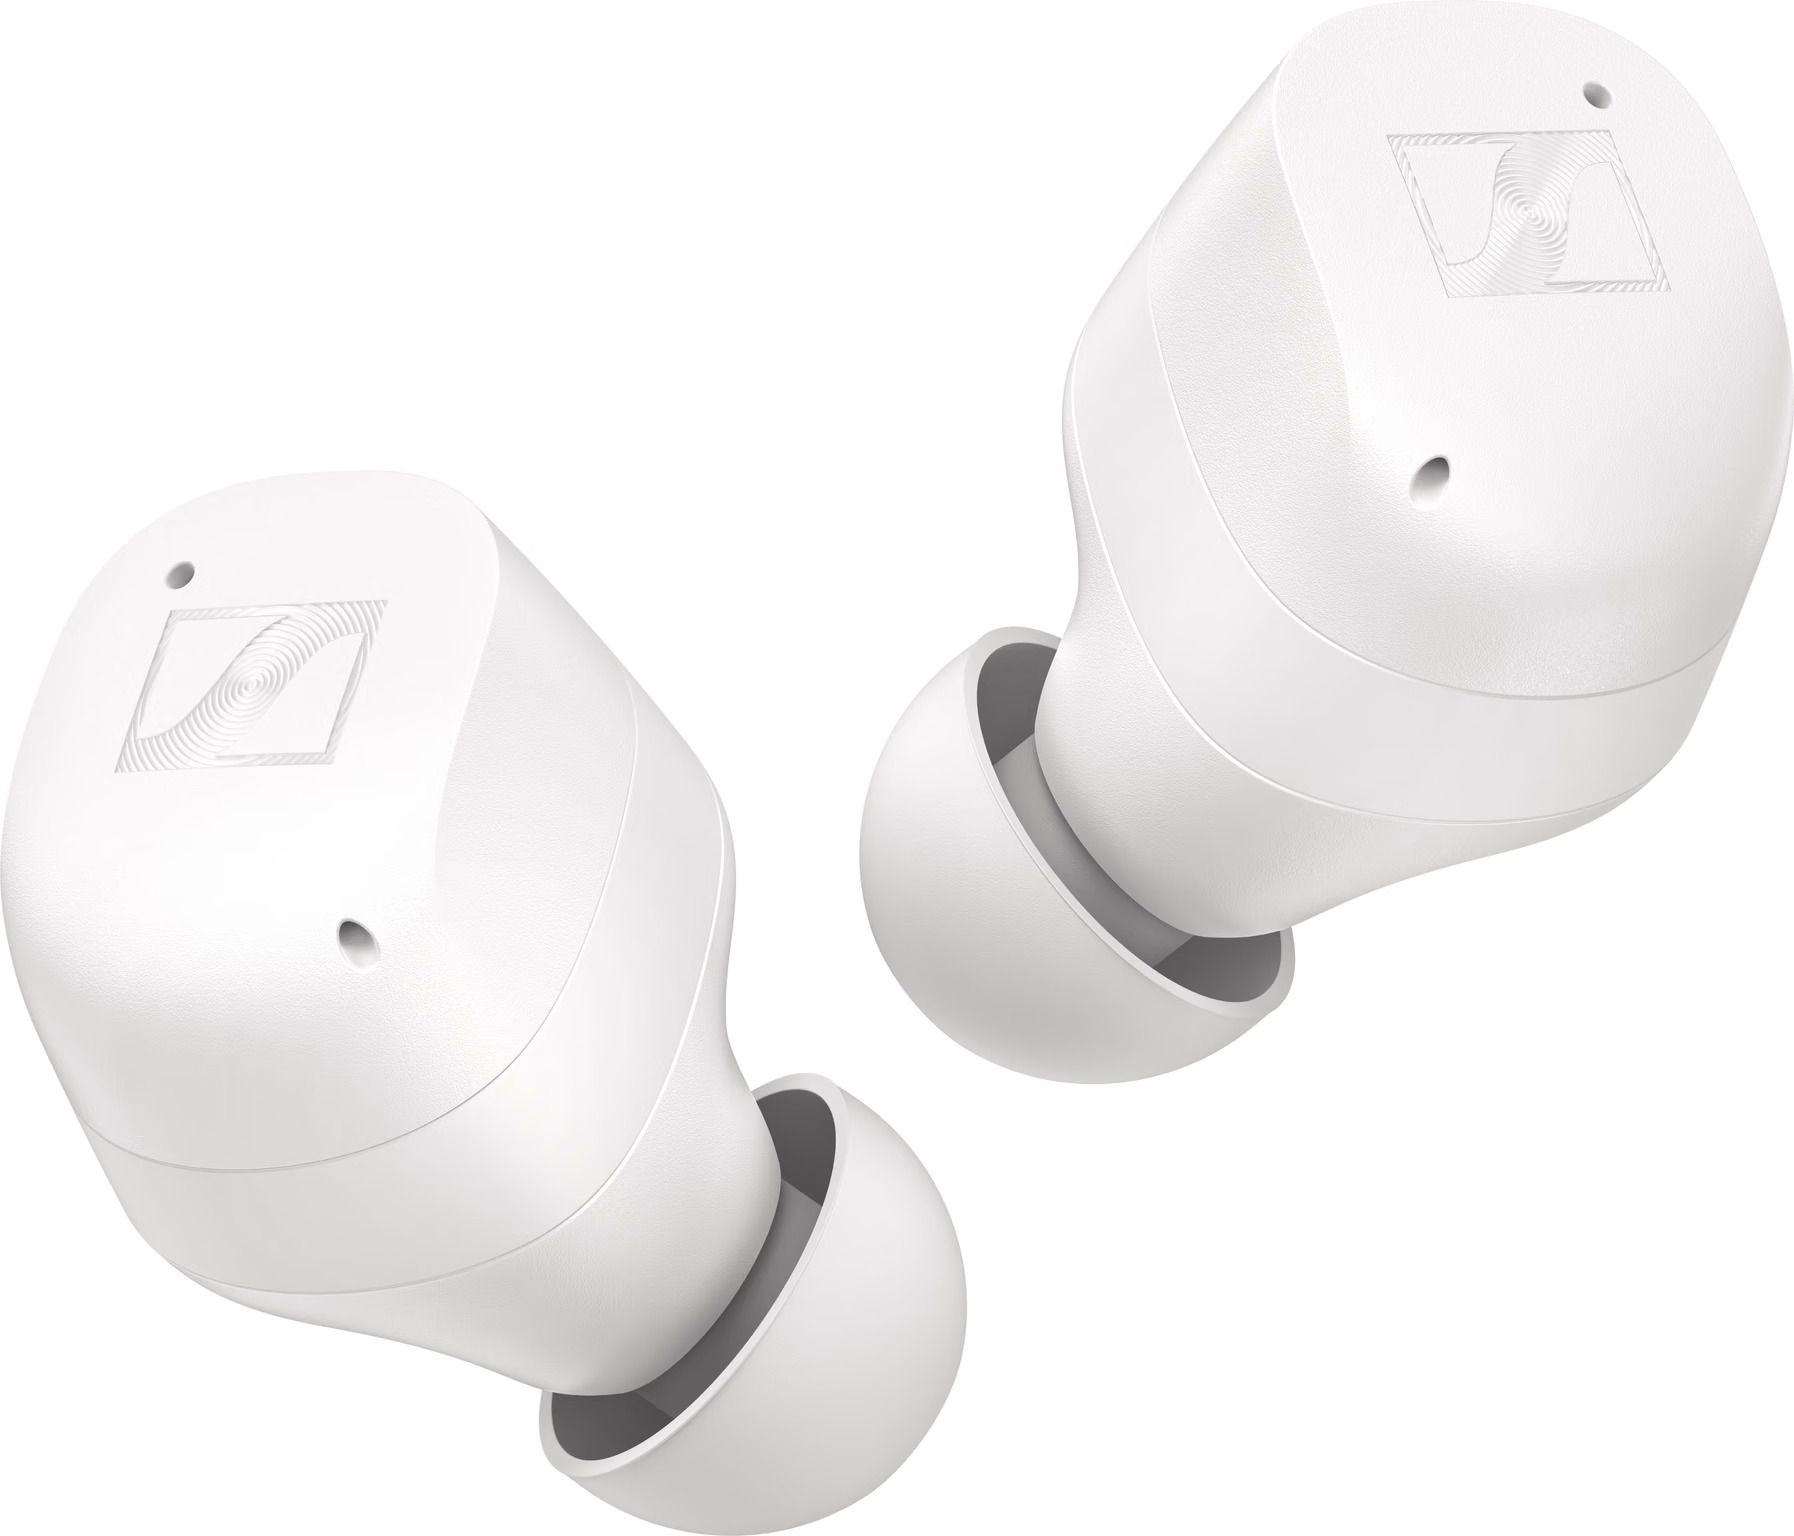 Sennheiser Momentum True Wireless 3 wit - In ear oordopjes